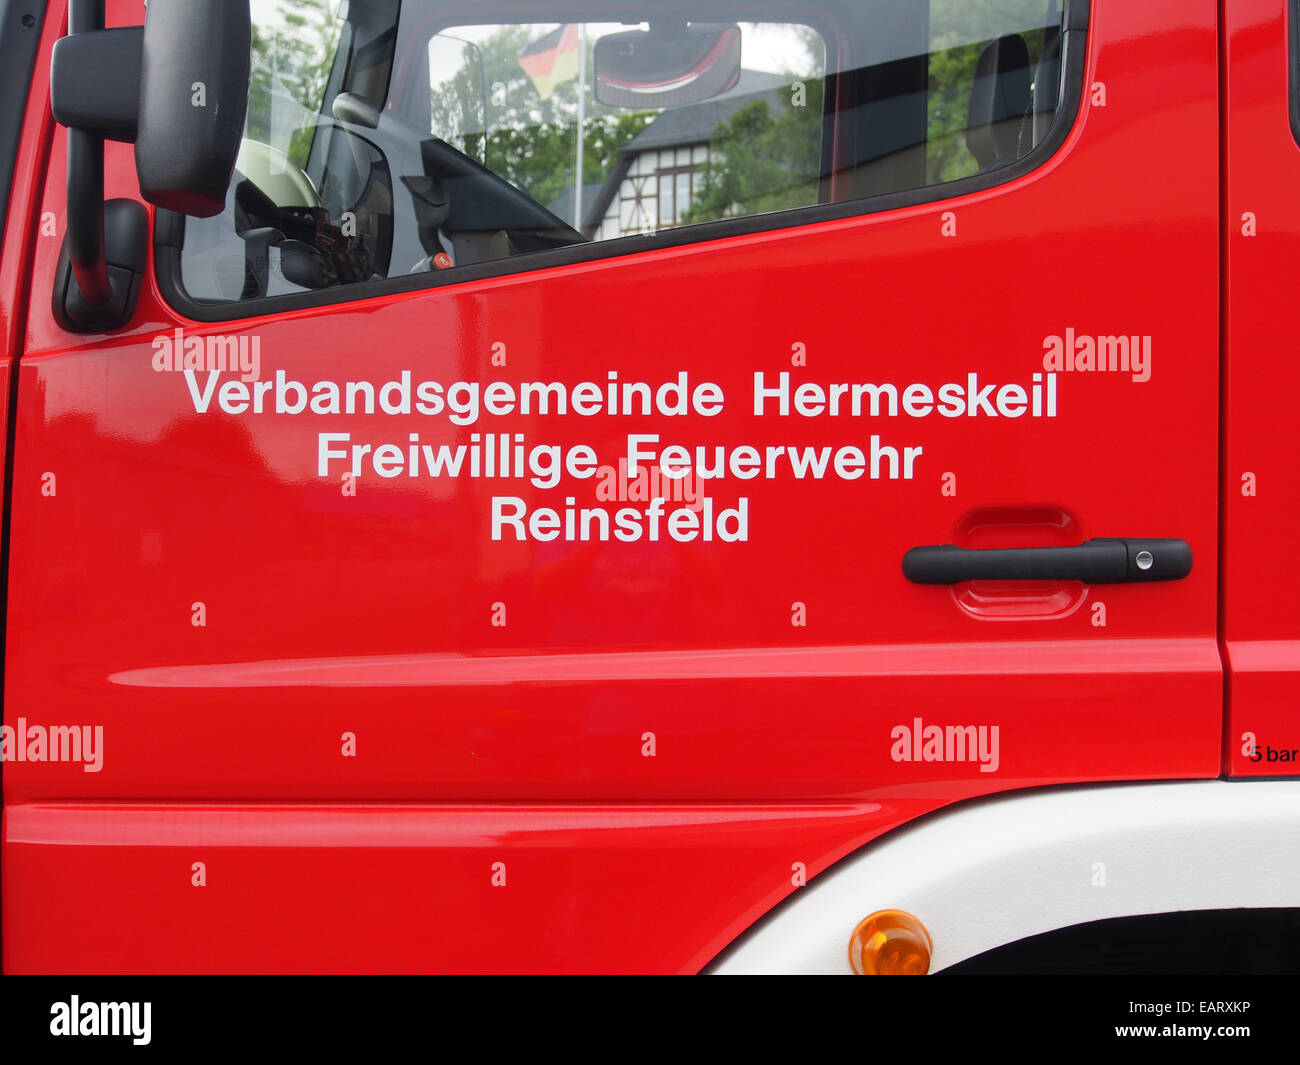 Mercedes, Schlingmann, Verbandsgemeinde Hermeskeil, Freiwillige Feuerwehr Reinsfeld, bild 5 Stock Photo